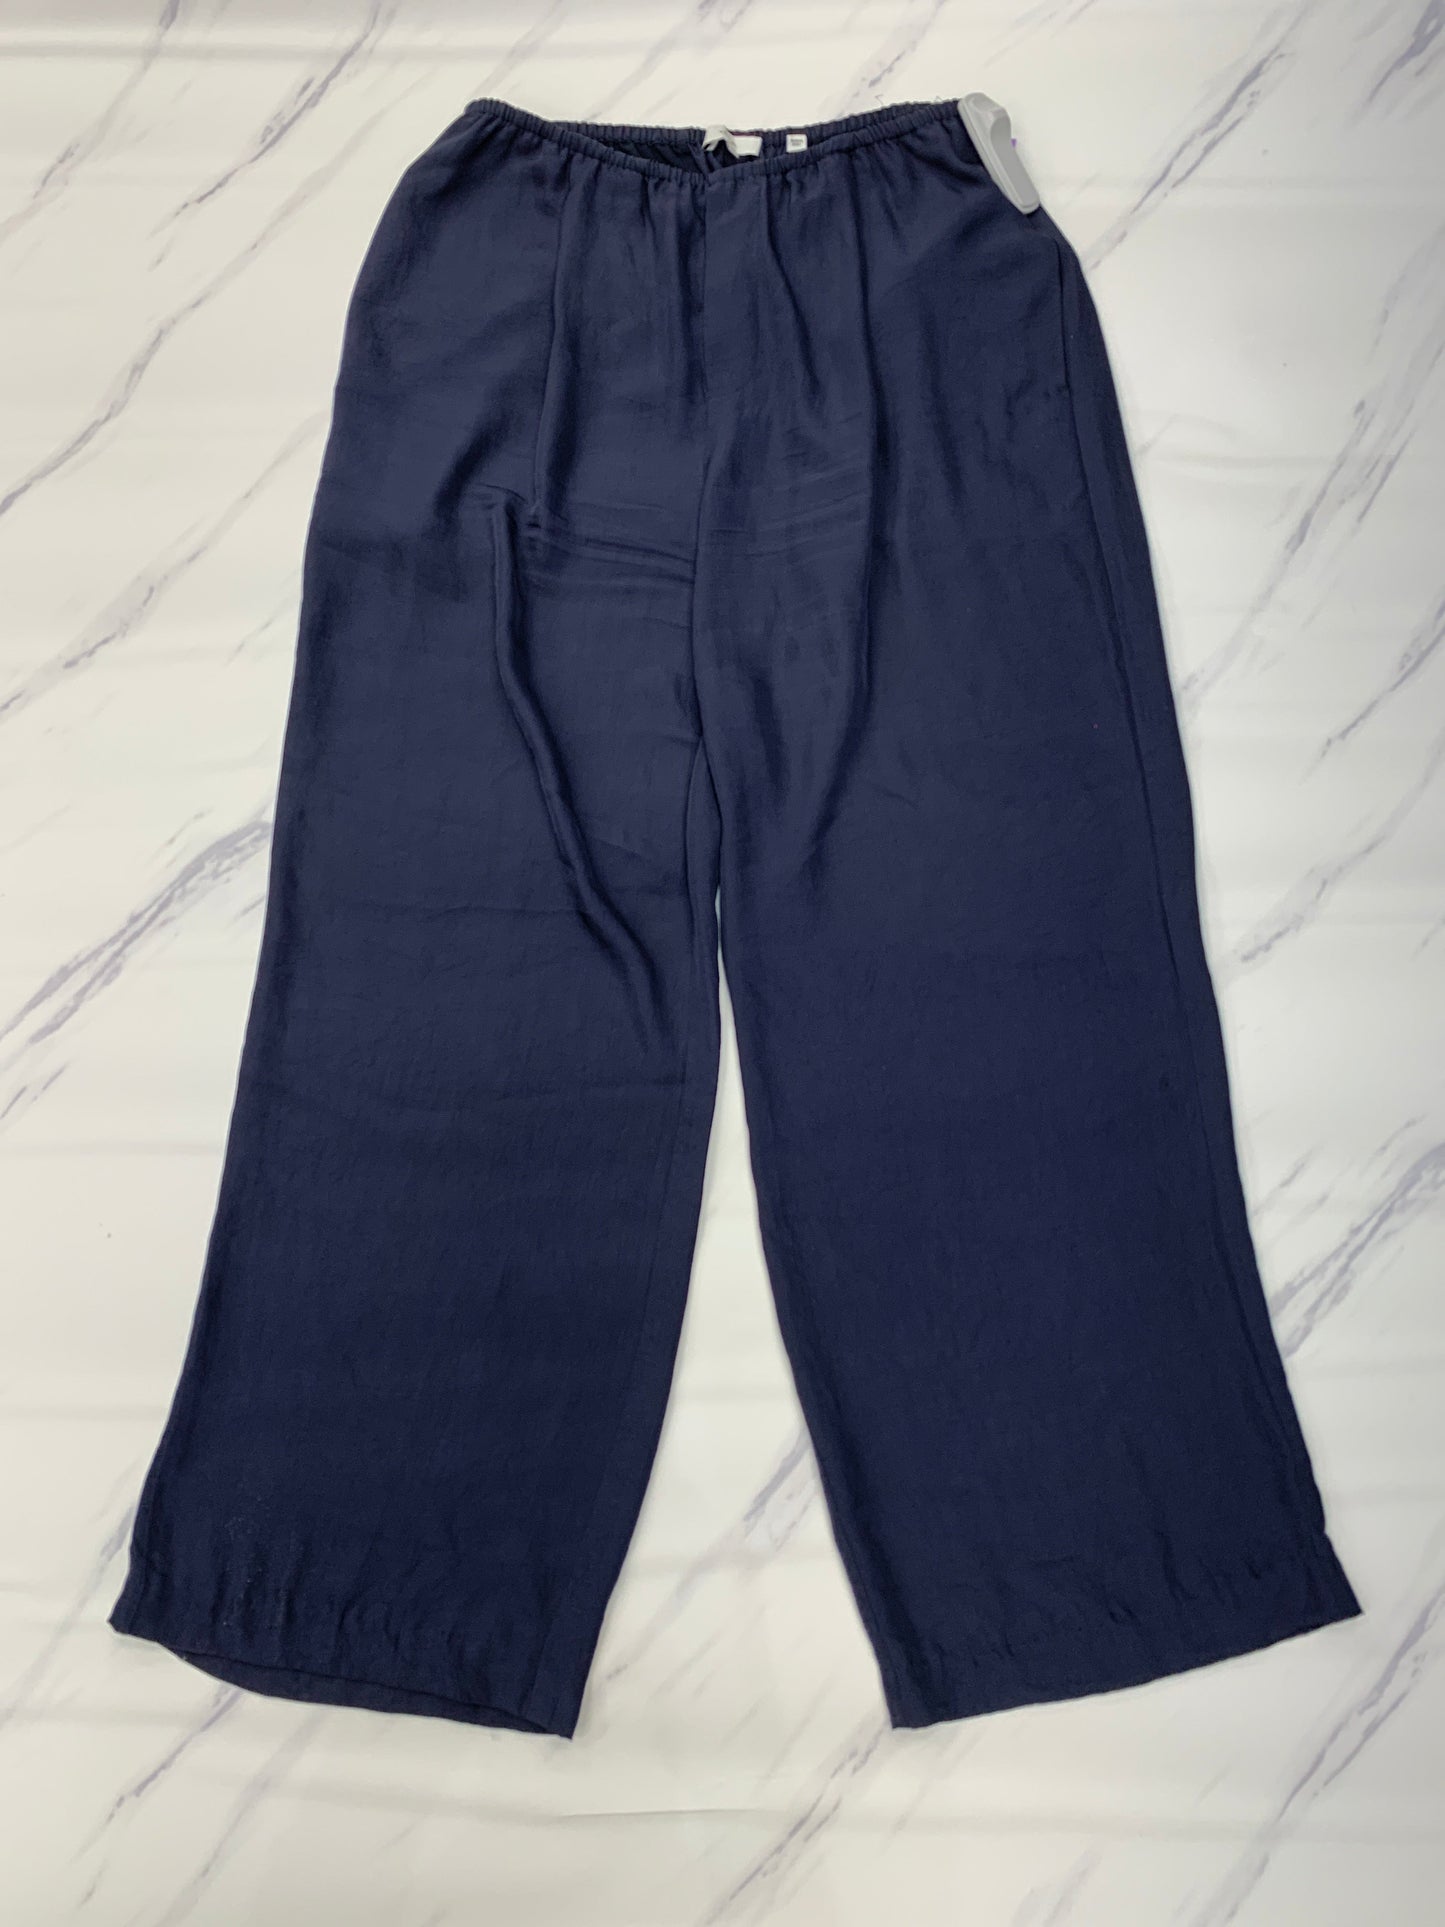 Pants Linen By Vince  Size: L